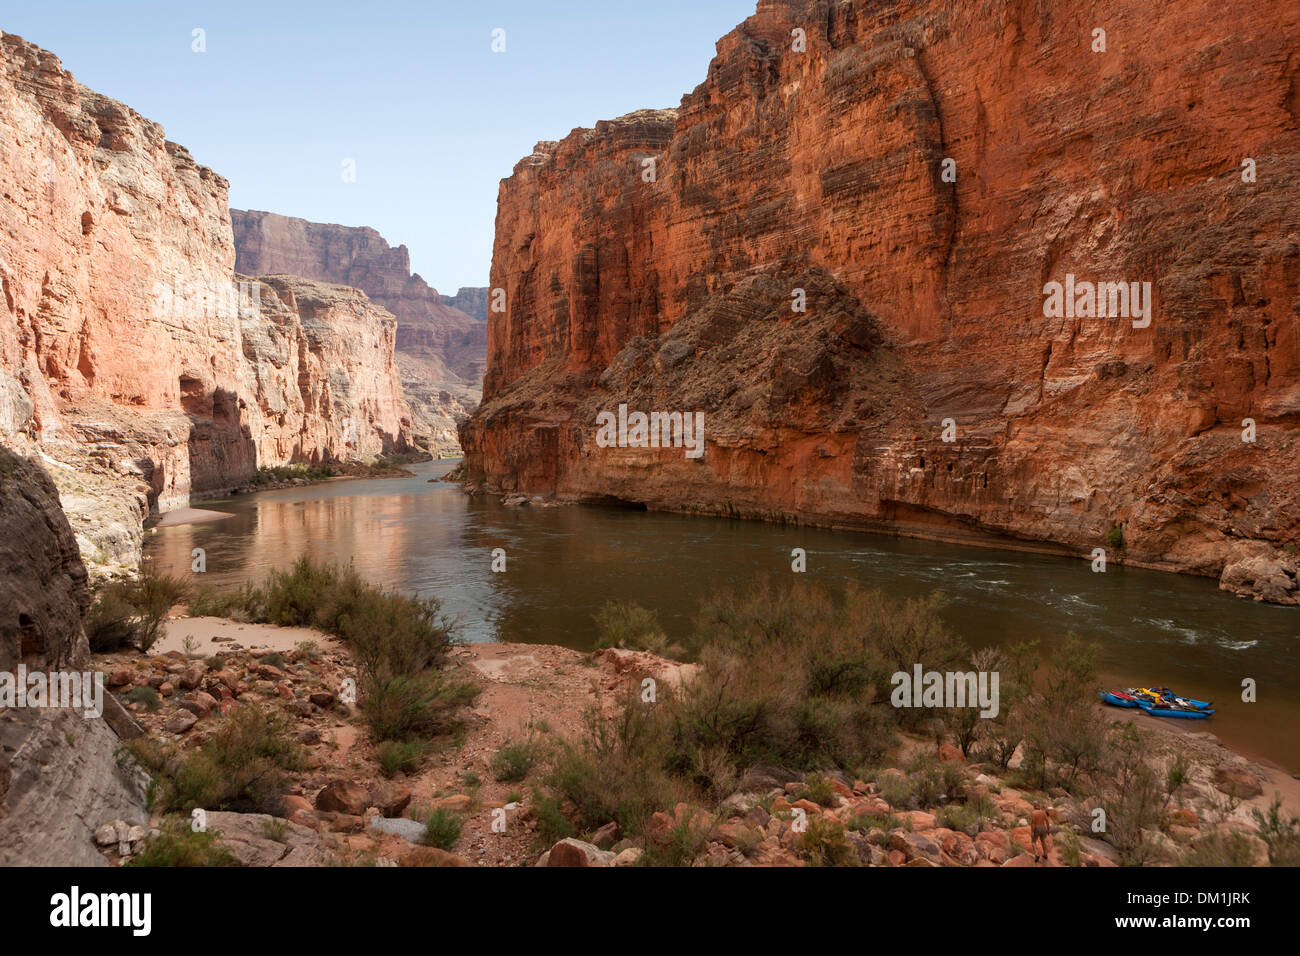 Ein paar Flöße an Ufer im Bereich des Grand Canyon Redwall gebunden. Stockfoto